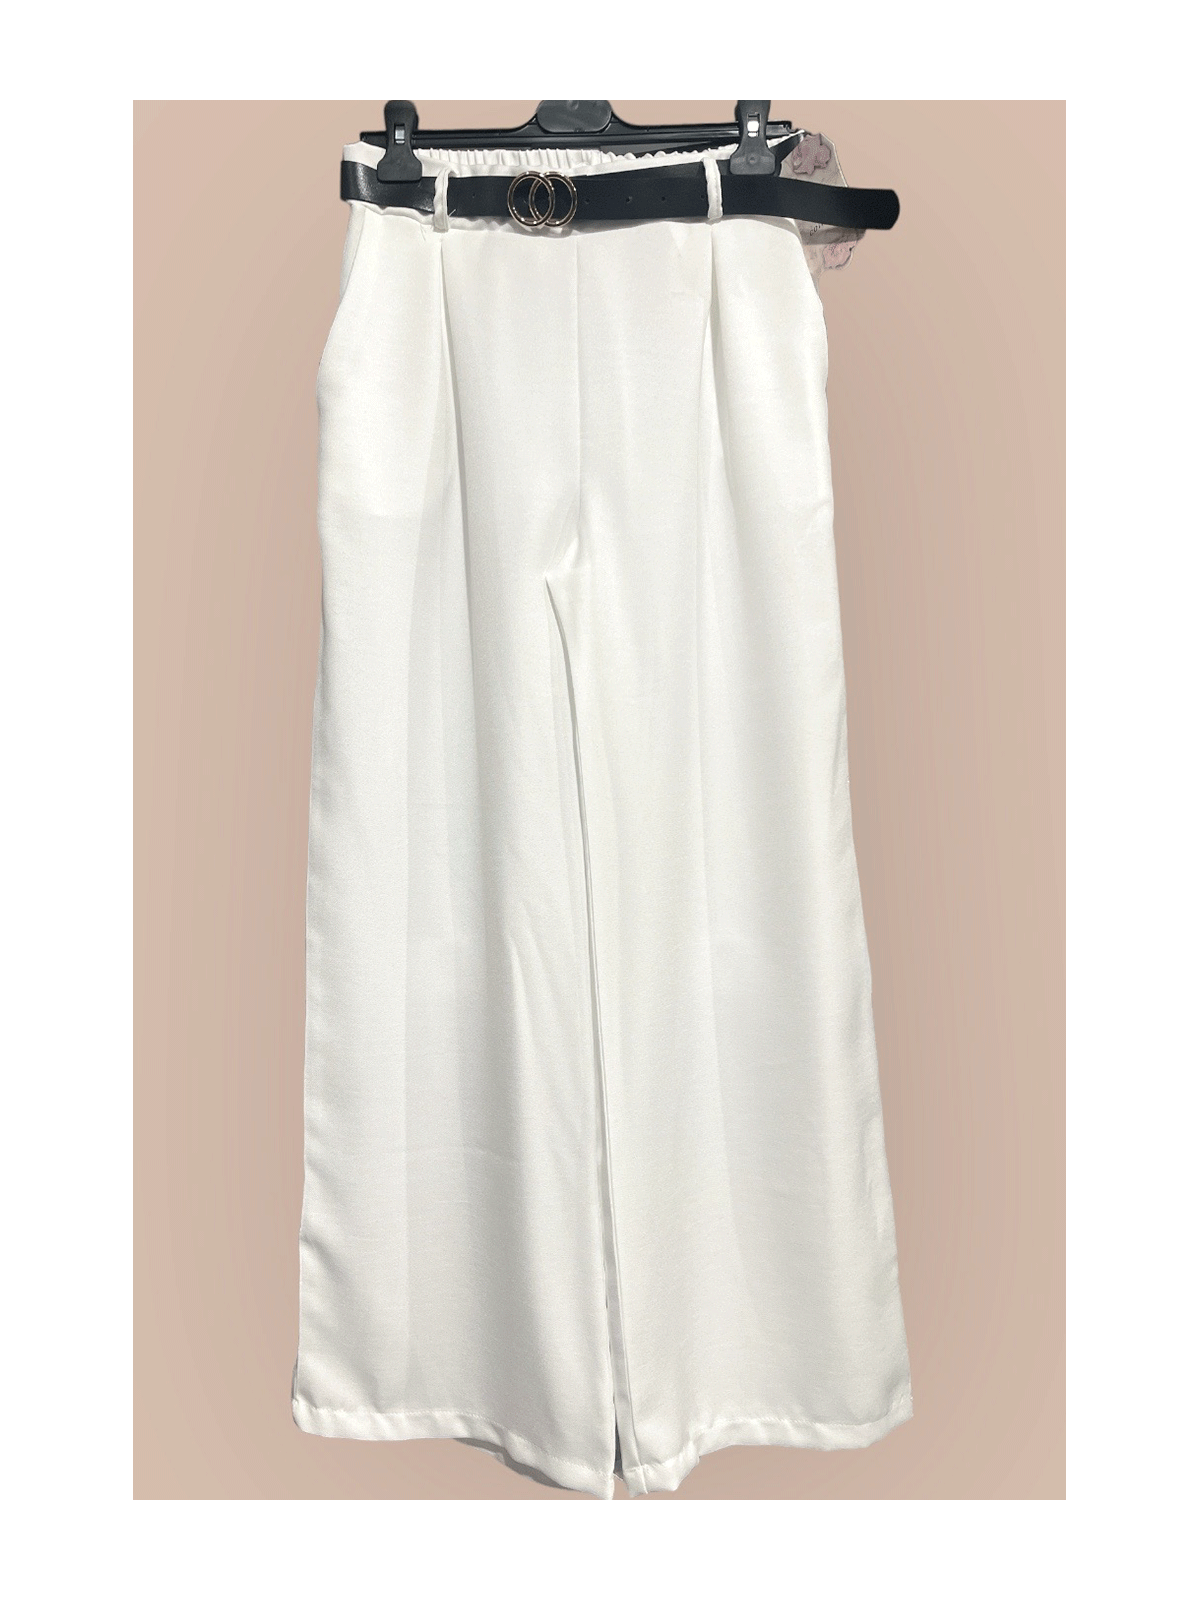 Pantalon palazzo blanc avec poches et ceinture - 1